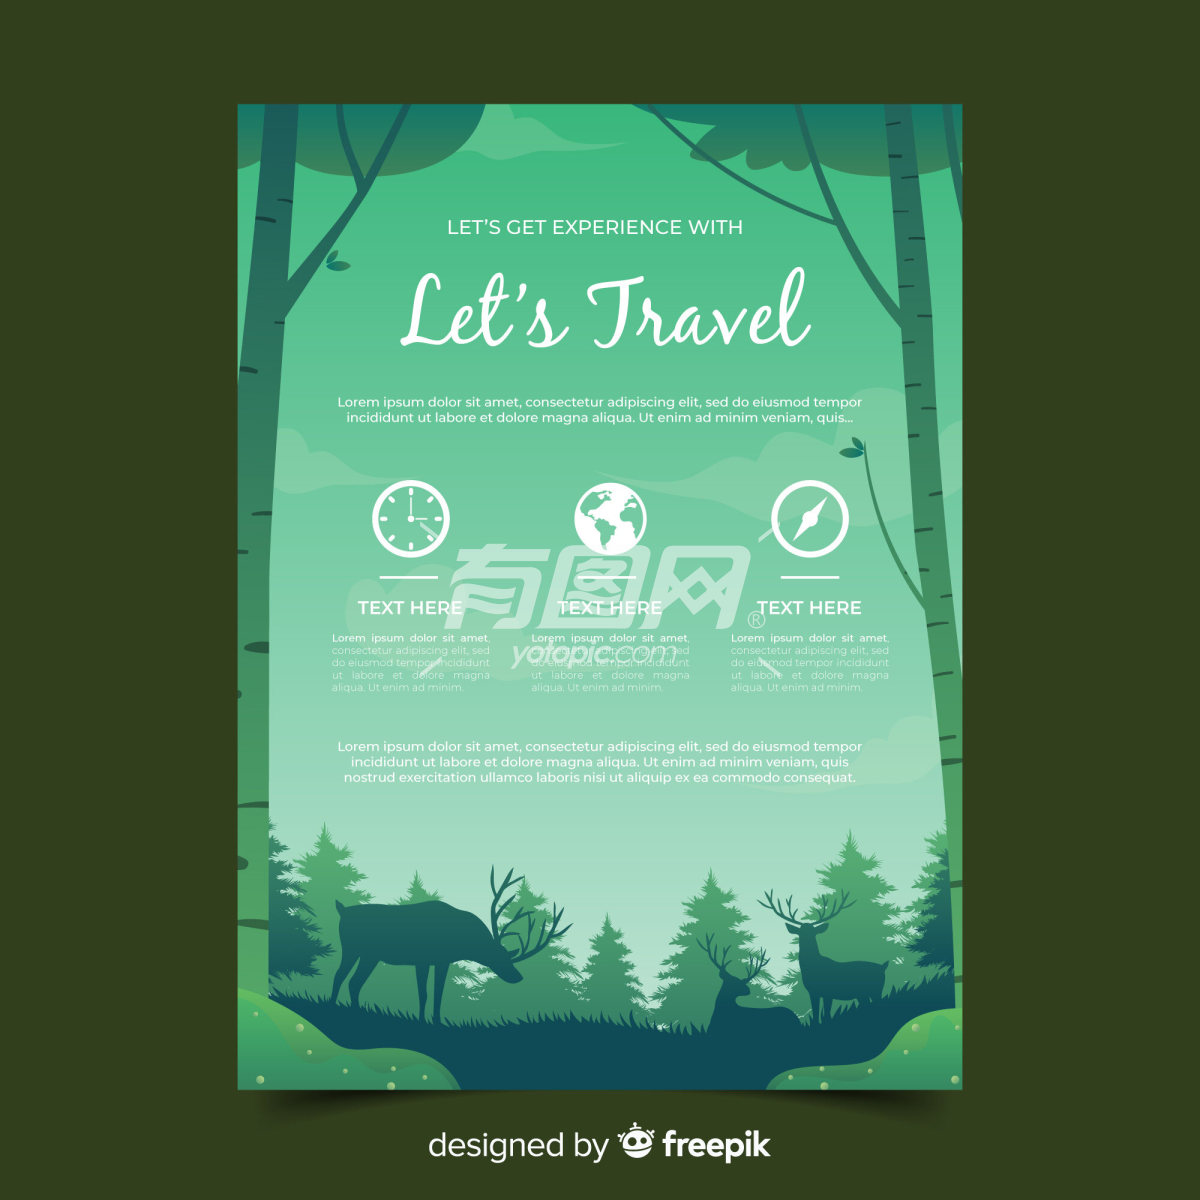 设计精美的旅游宣传海报